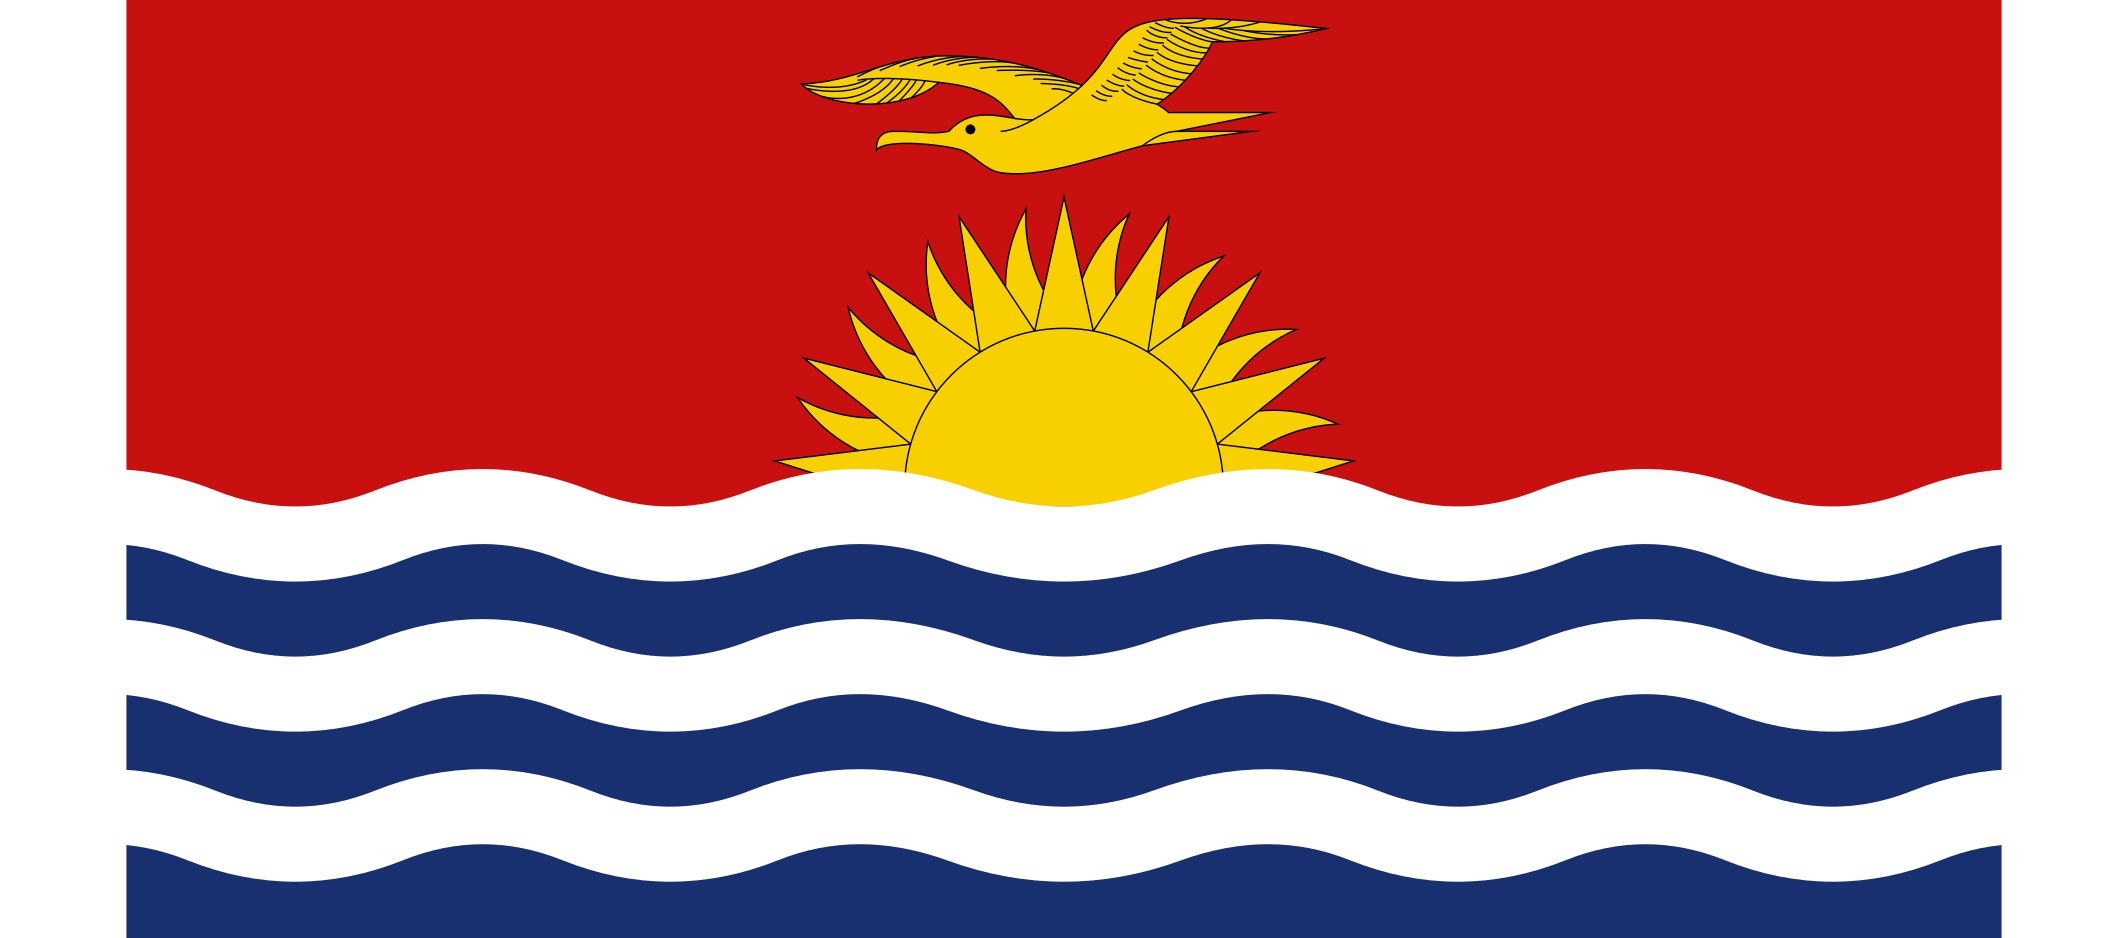 Kiribati Flag Vector - Free Download